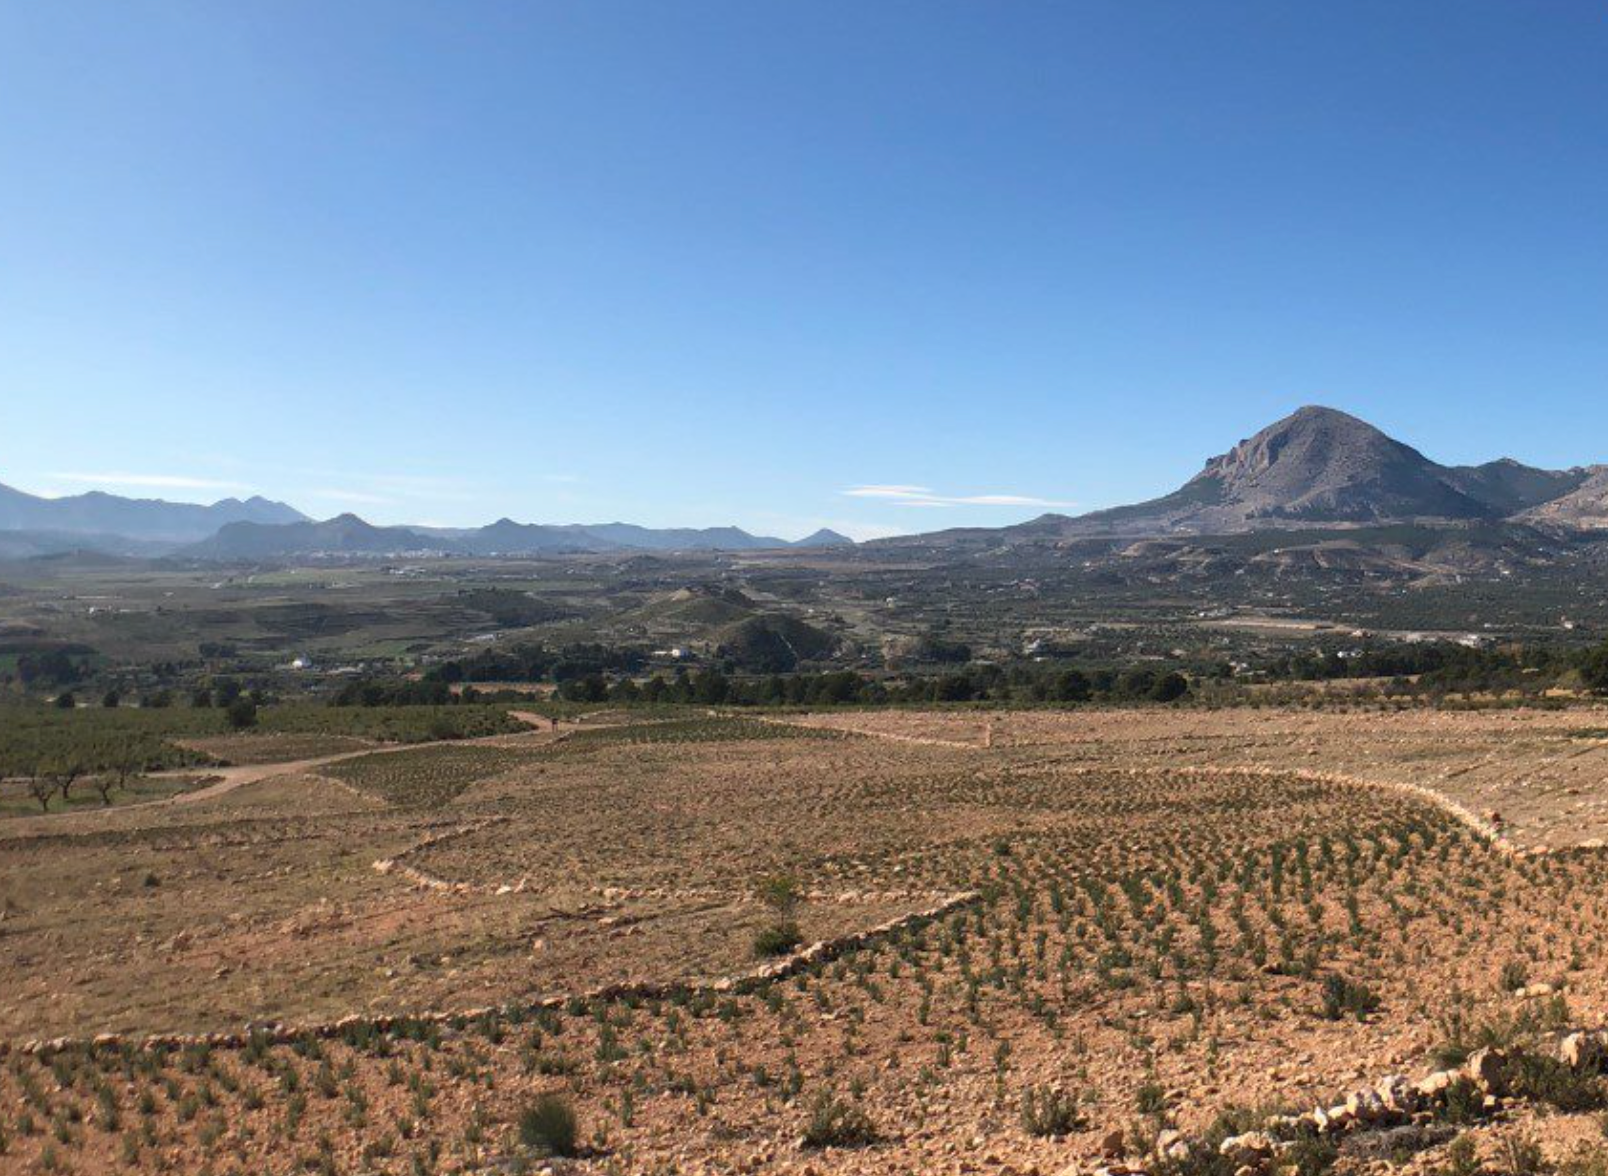 Altiplano Estepario bioregion, Spain